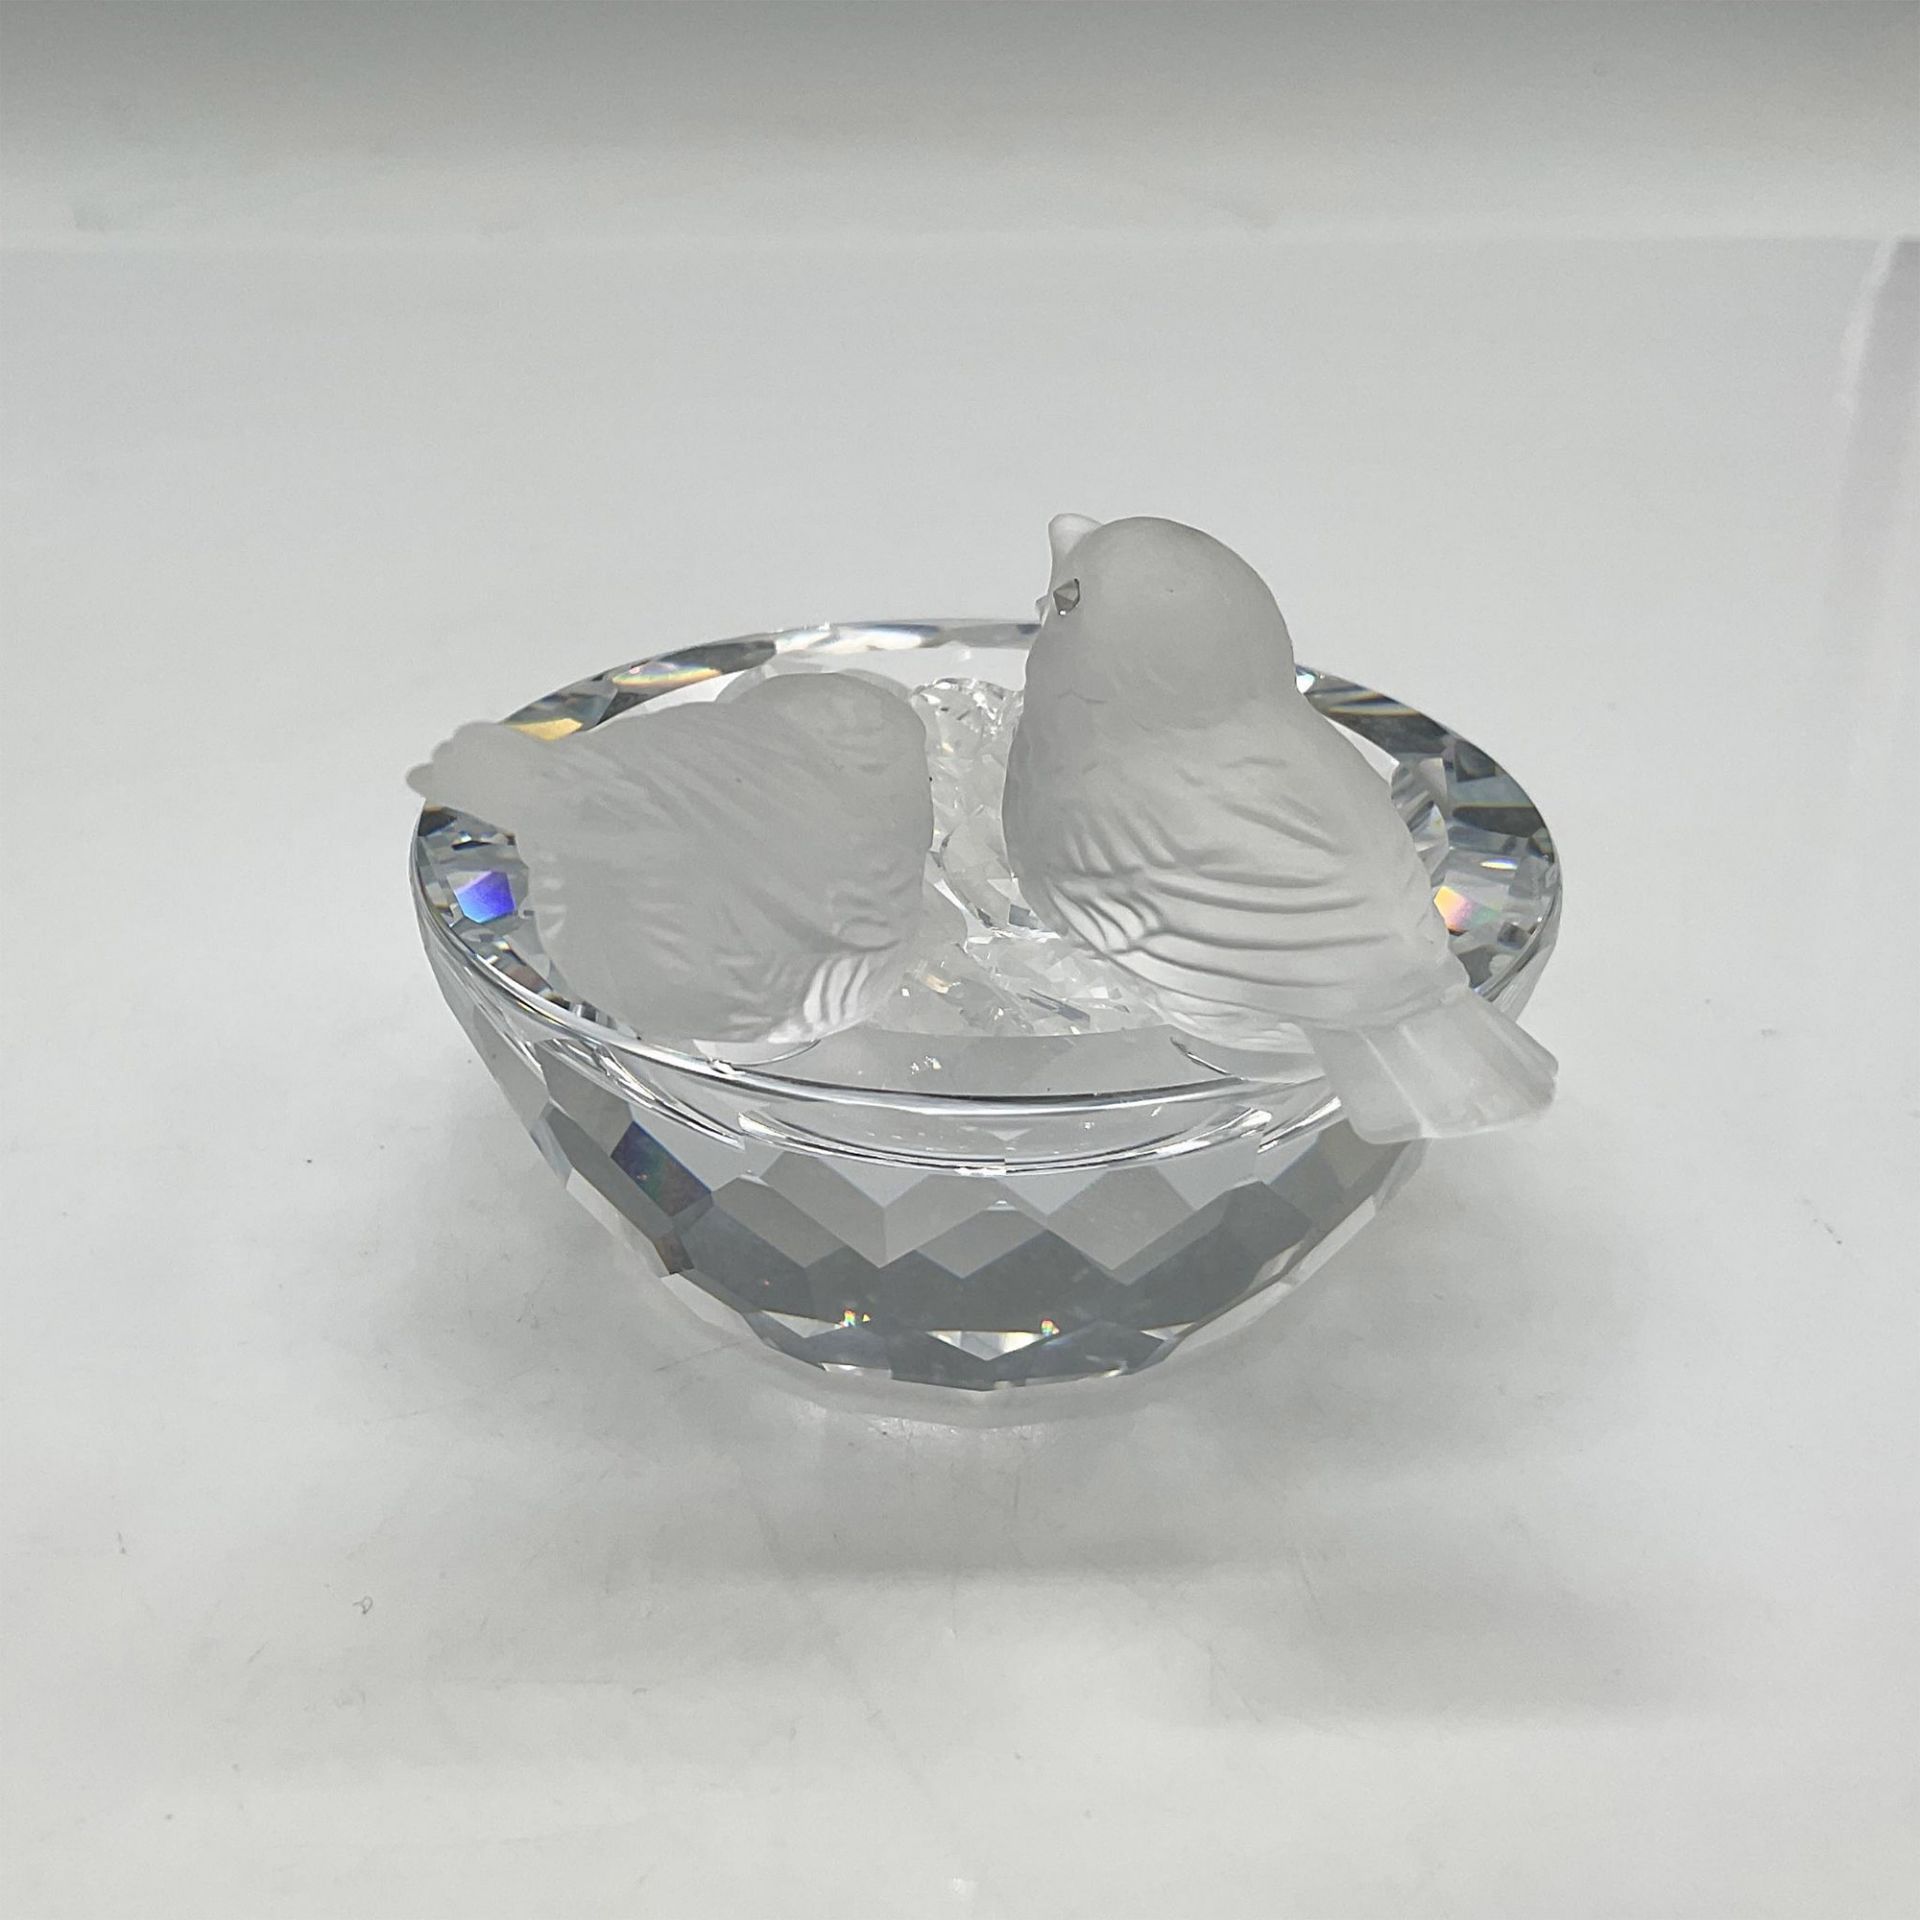 Swarovski Crystal Figurine, Bird Bath with Crystals - Bild 2 aus 4